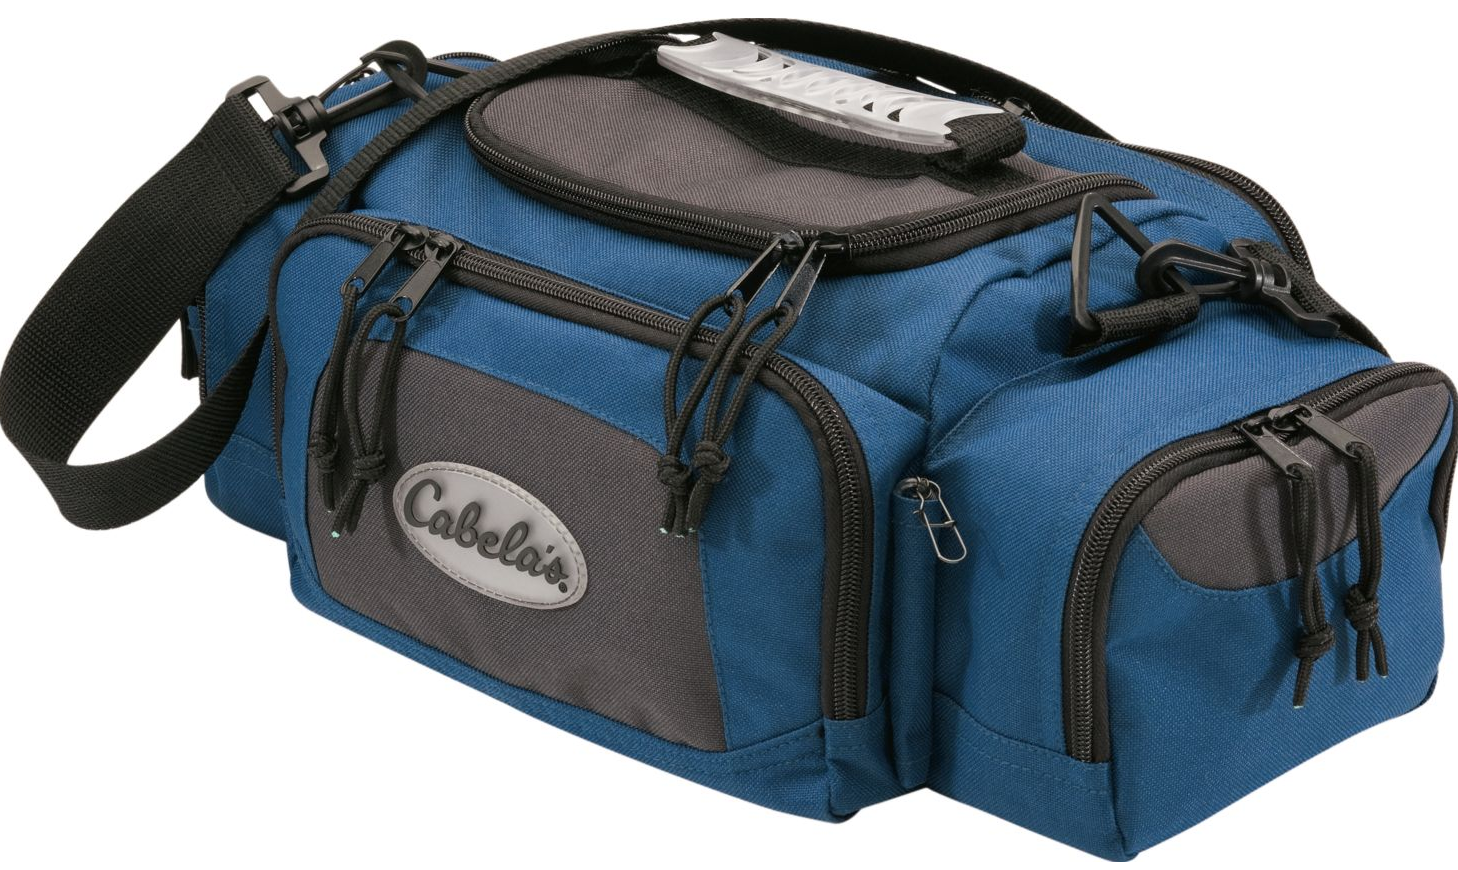 Cabela's Utility Bag ONLY $7.99 (Reg. $24.99)